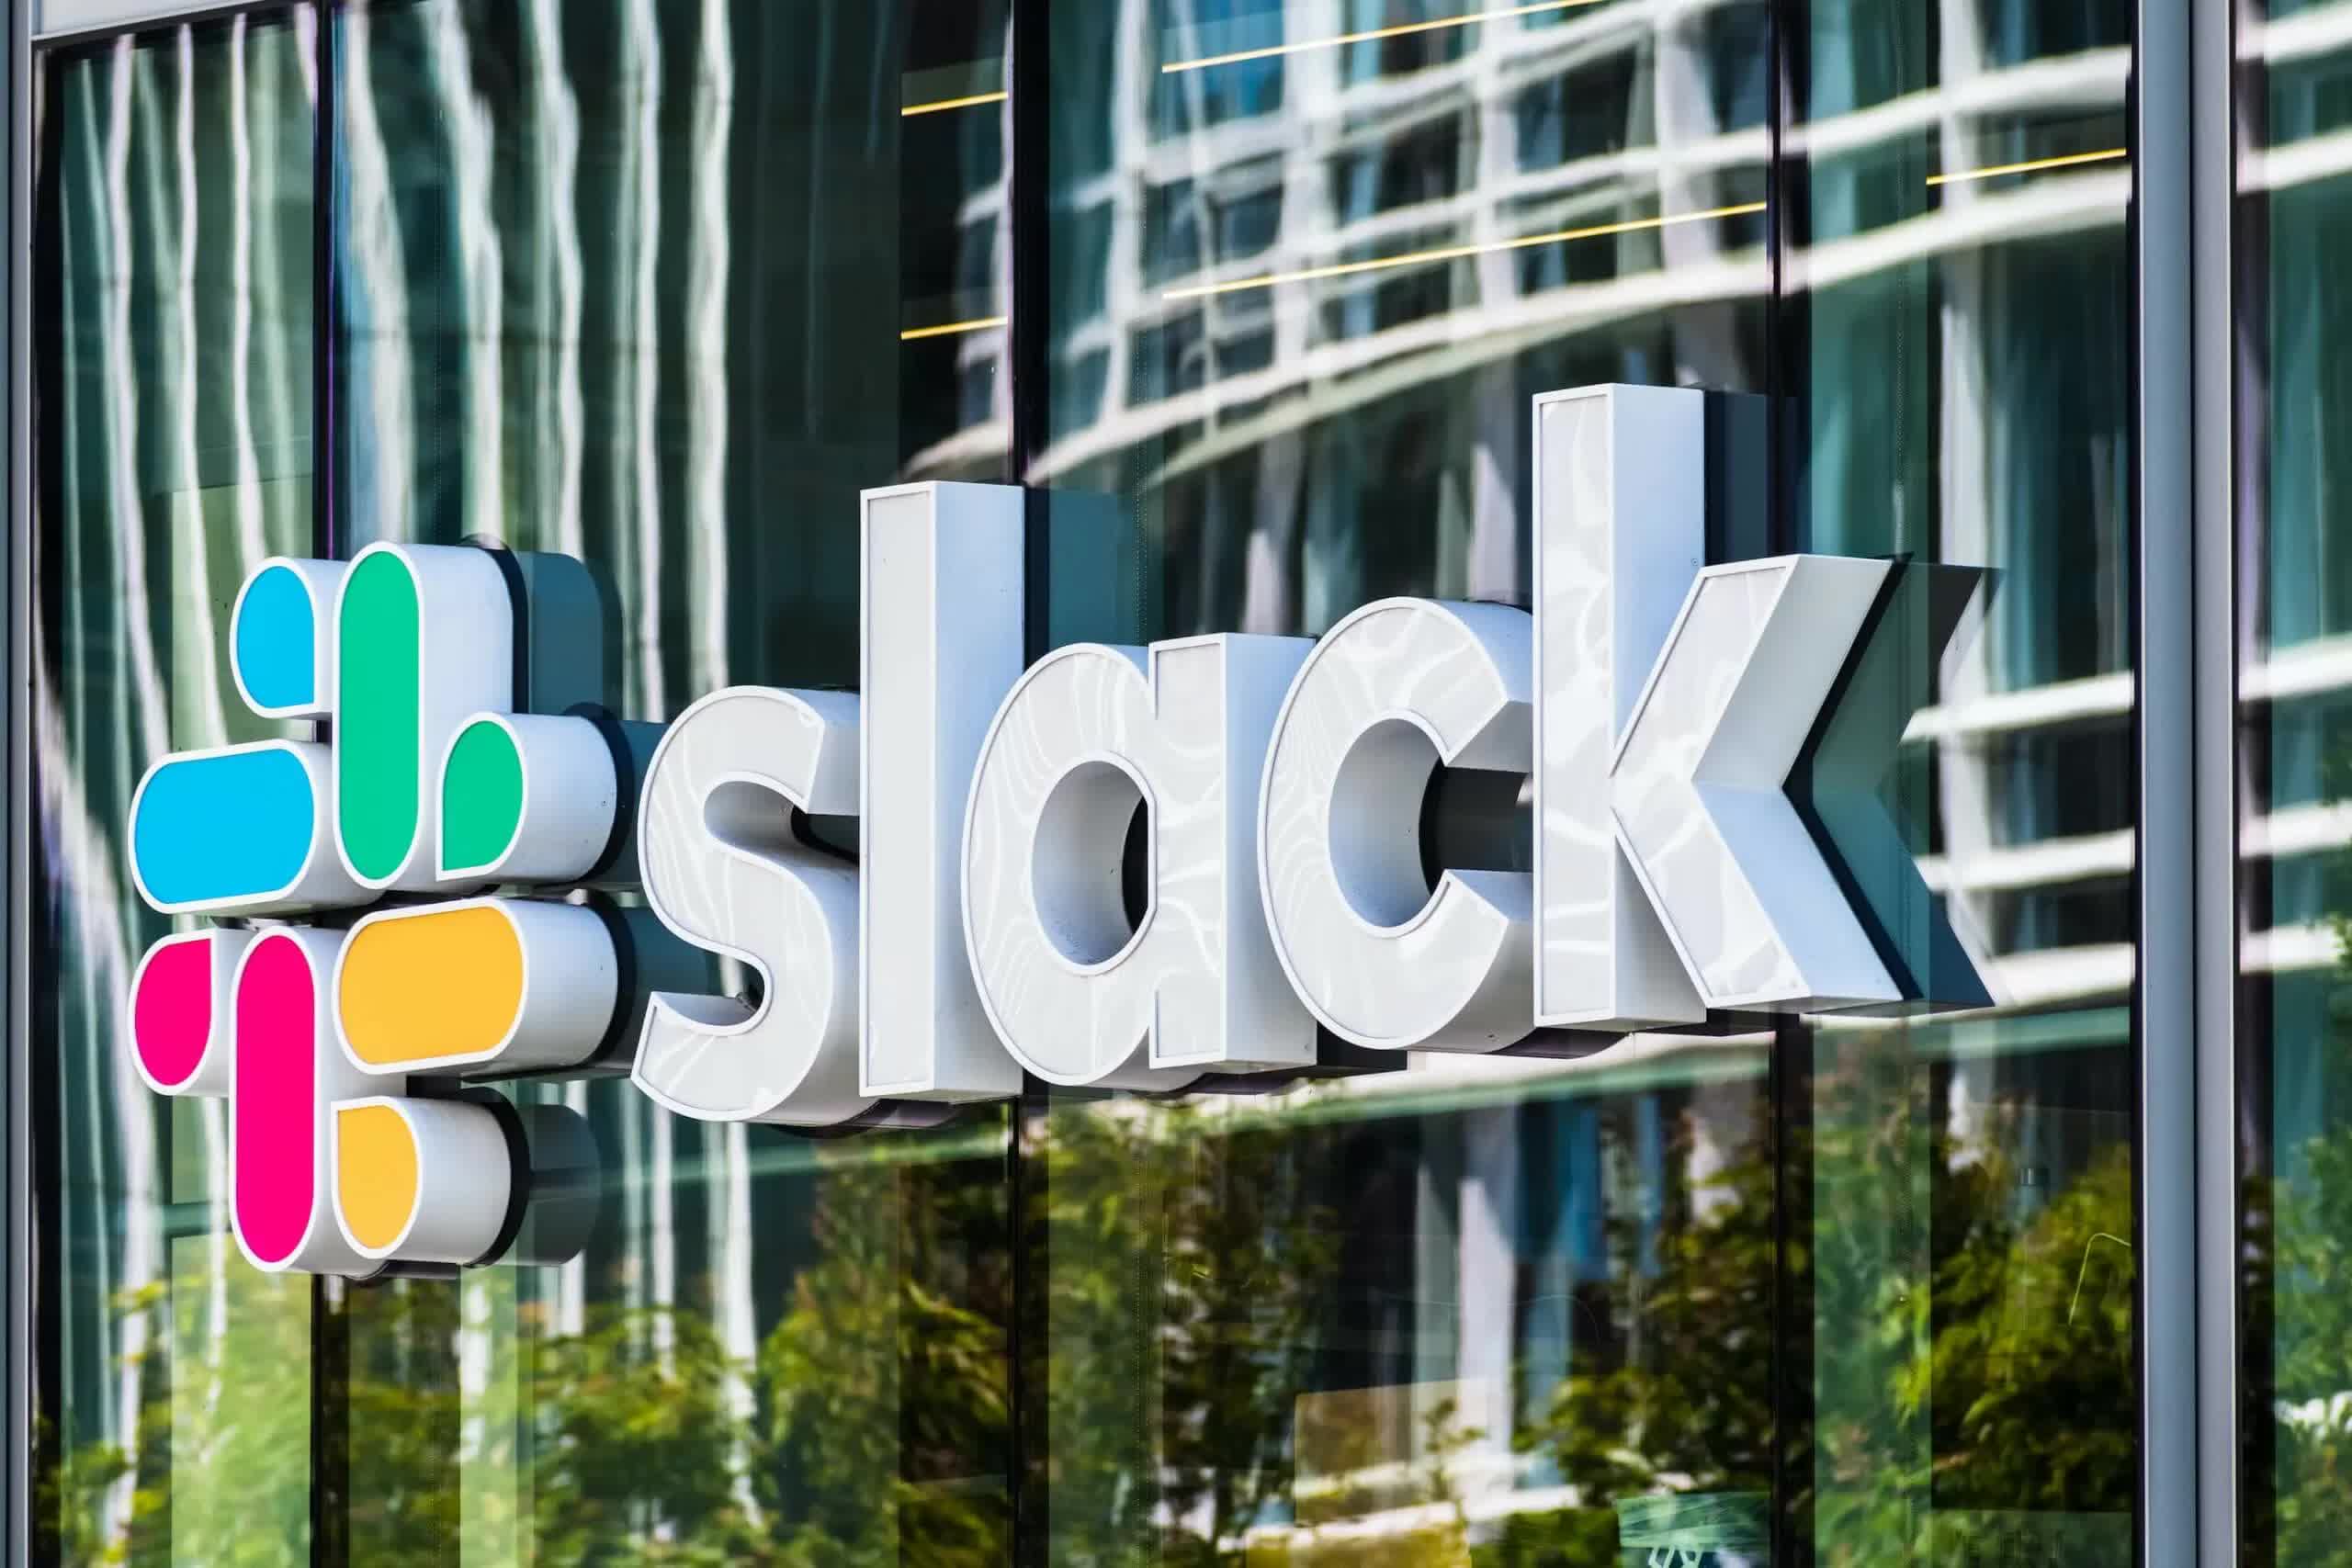 Slack ha estado desviando datos de usuarios para entrenar modelos de IA, inscribiéndote automáticamente